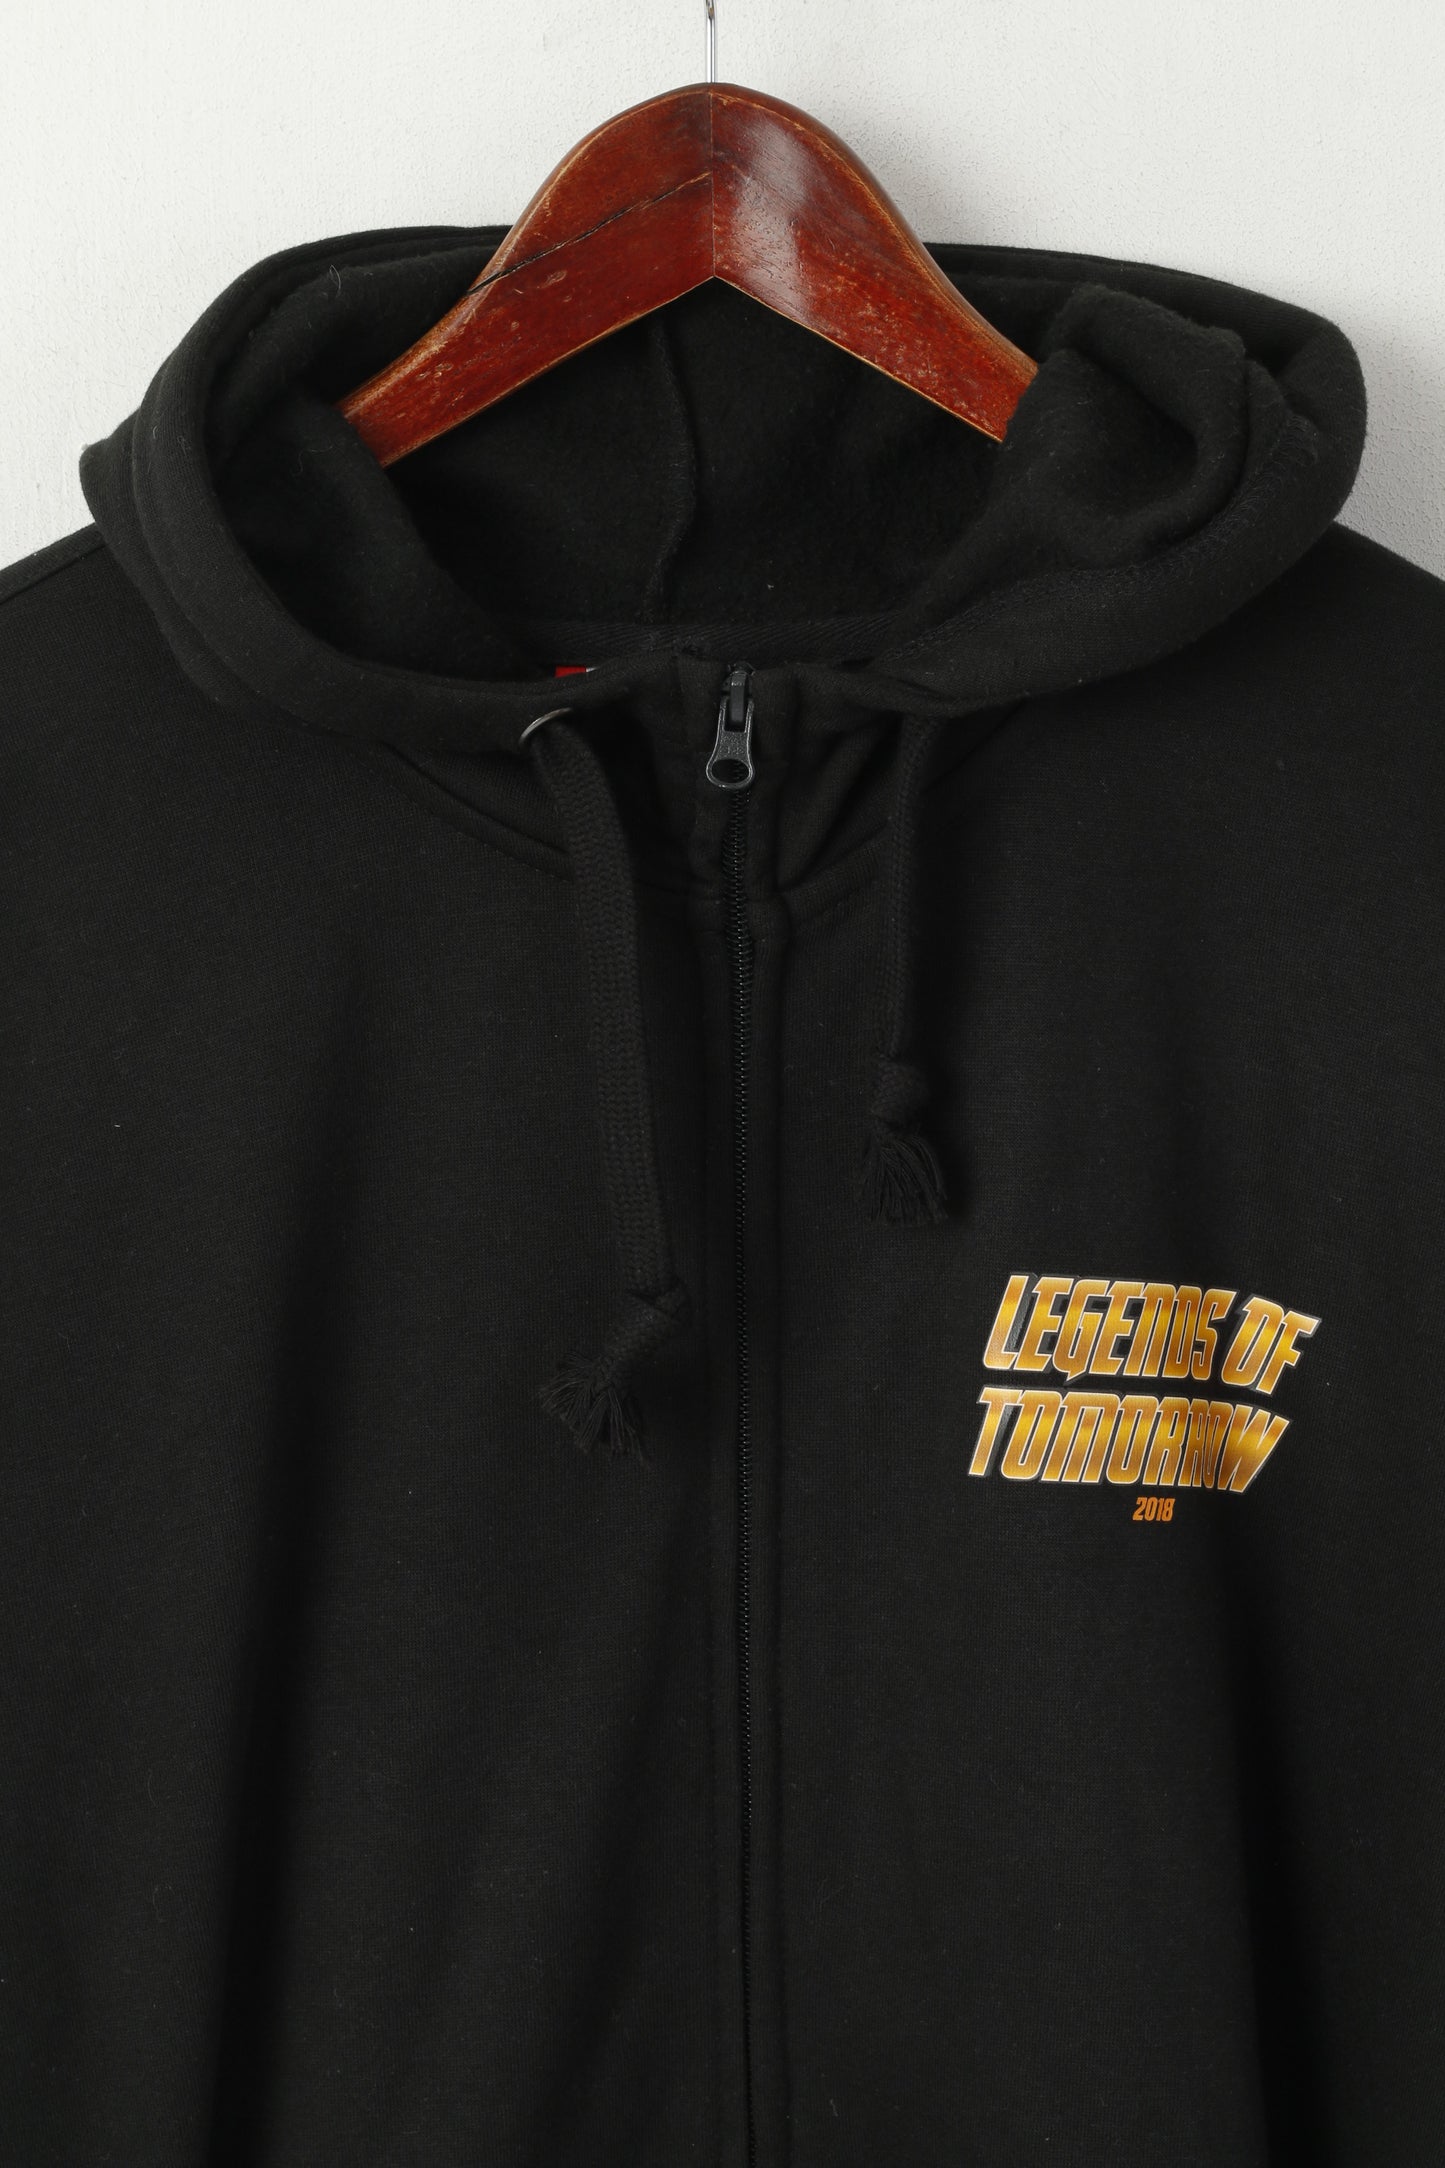 Clique Men XL Sweatshirt Black Cotton Legends Of Tomorrow 2018 Hooded Top